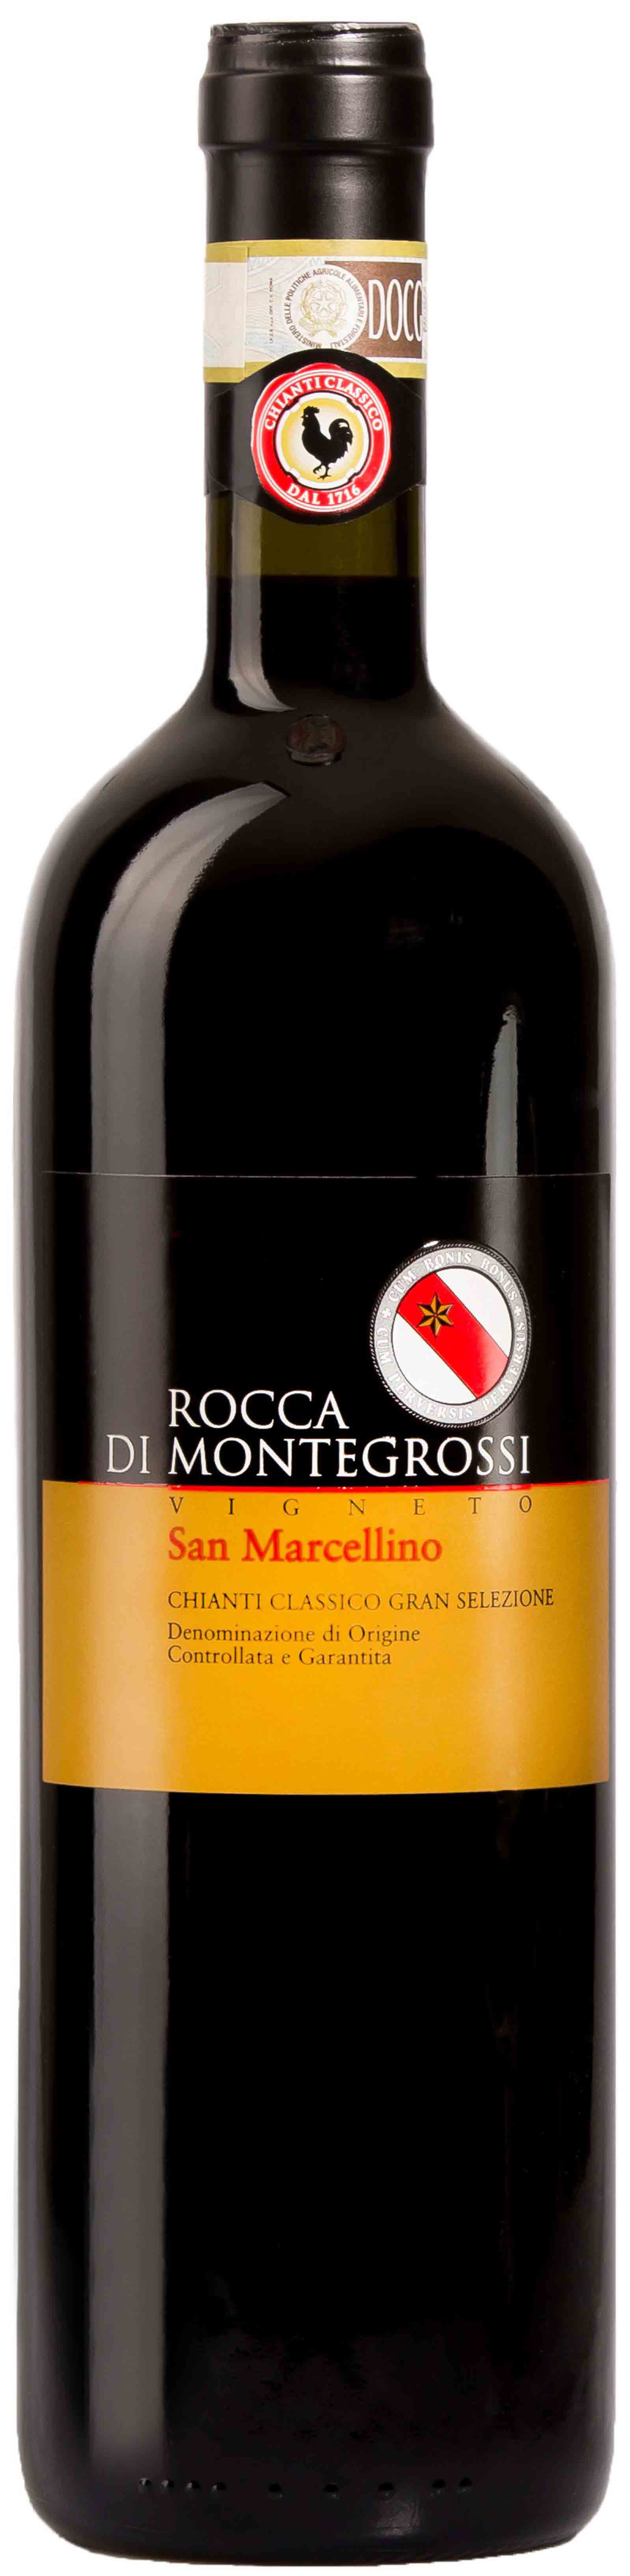 Rocca Di Montegrossi, Vigneto San Marcellino Chianti Classico Gran Selezione, 2010